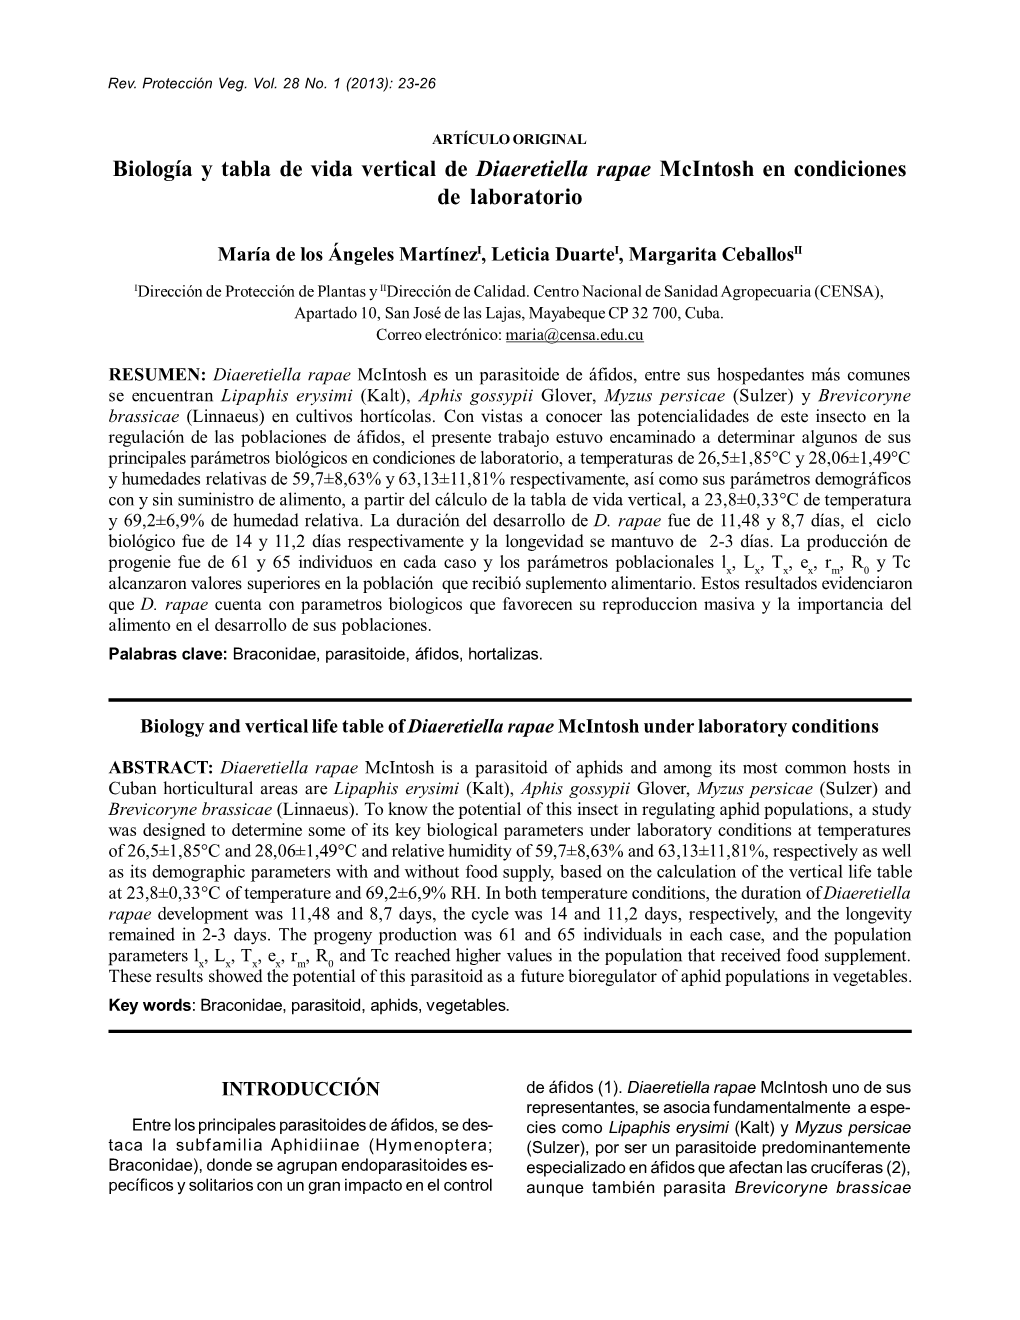 Biología Y Tabla De Vida Vertical De Diaeretiella Rapae Mcintosh En Condiciones De Laboratorio